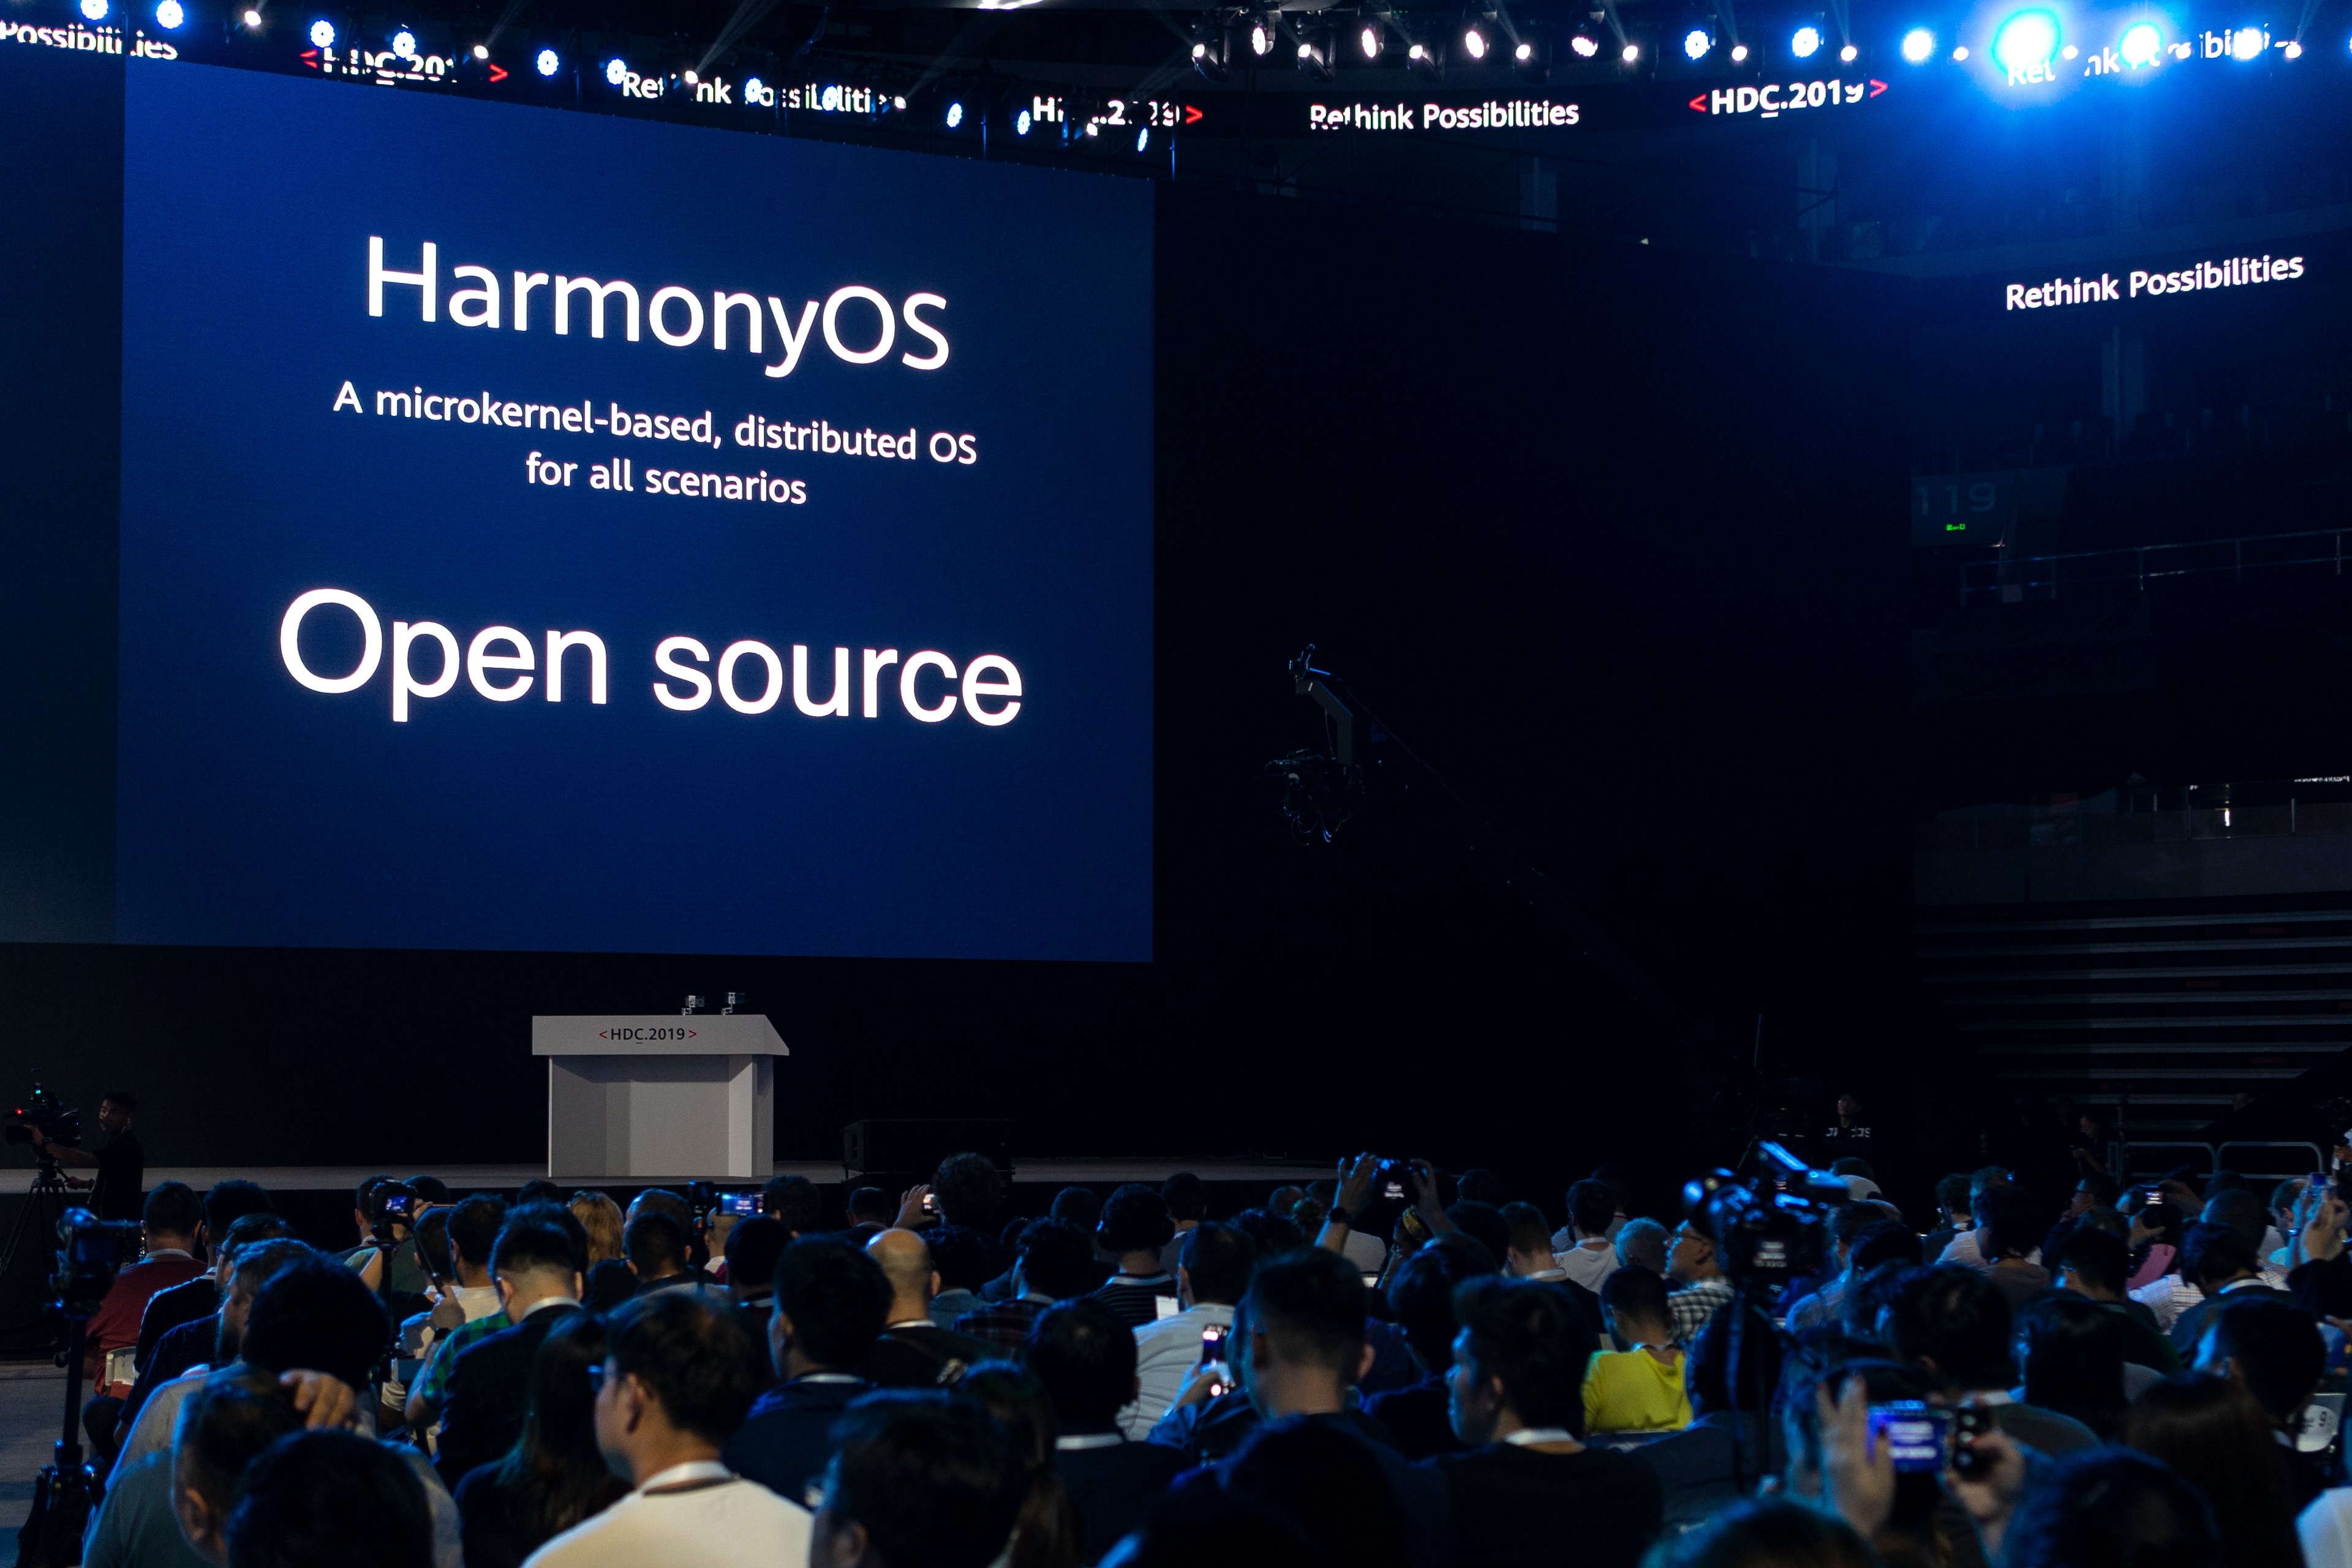 HarmonyOS é o sistema operacional da Huawei para múltiplos dispositivos